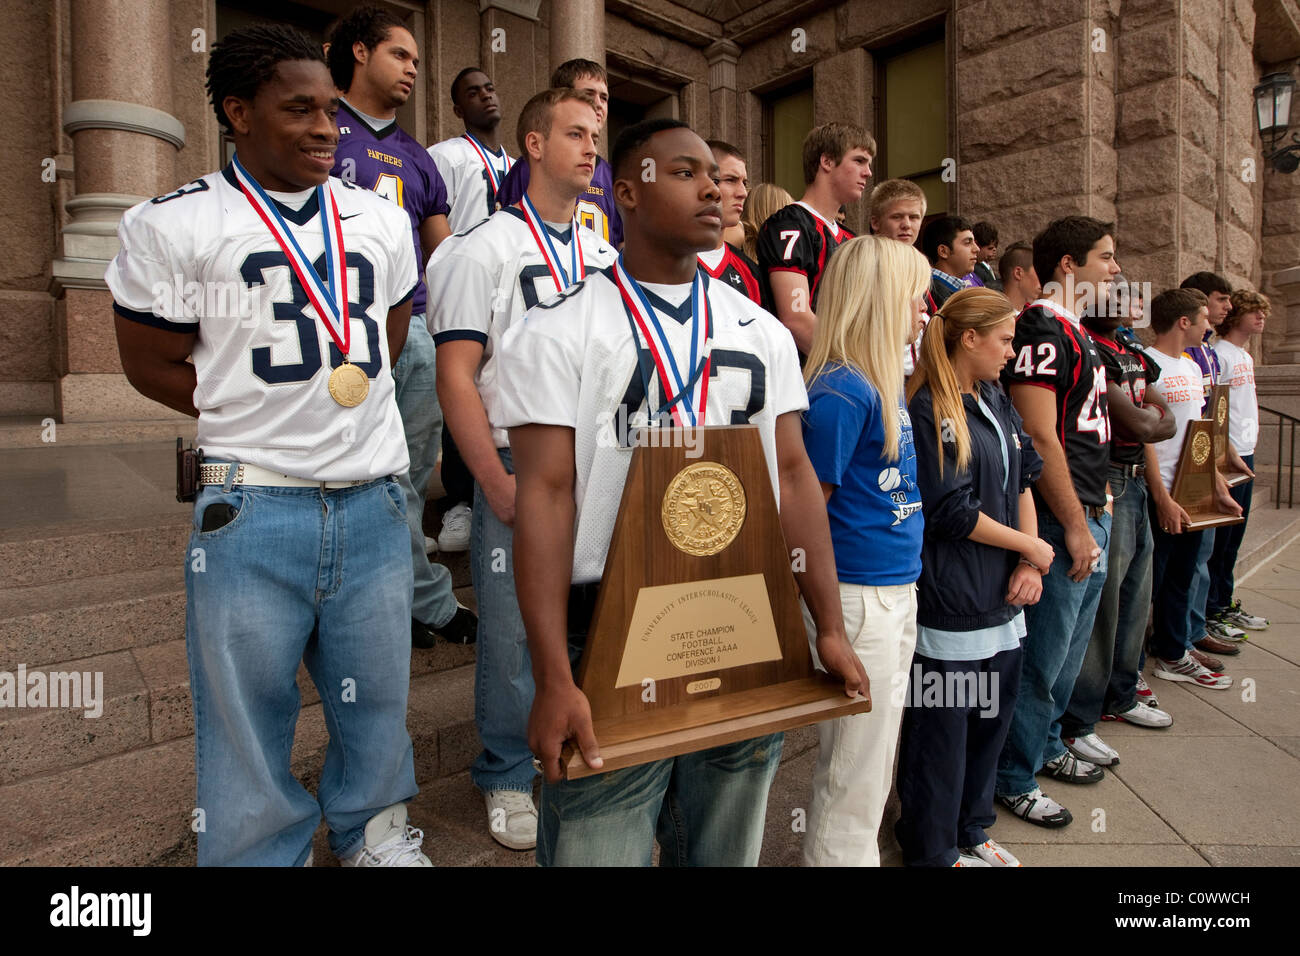 Maschio afro-americano mantiene uno stato campionato trofeo durante la cerimonia per il membro champs a varie attività sportive presso il Campidoglio del Texas Foto Stock